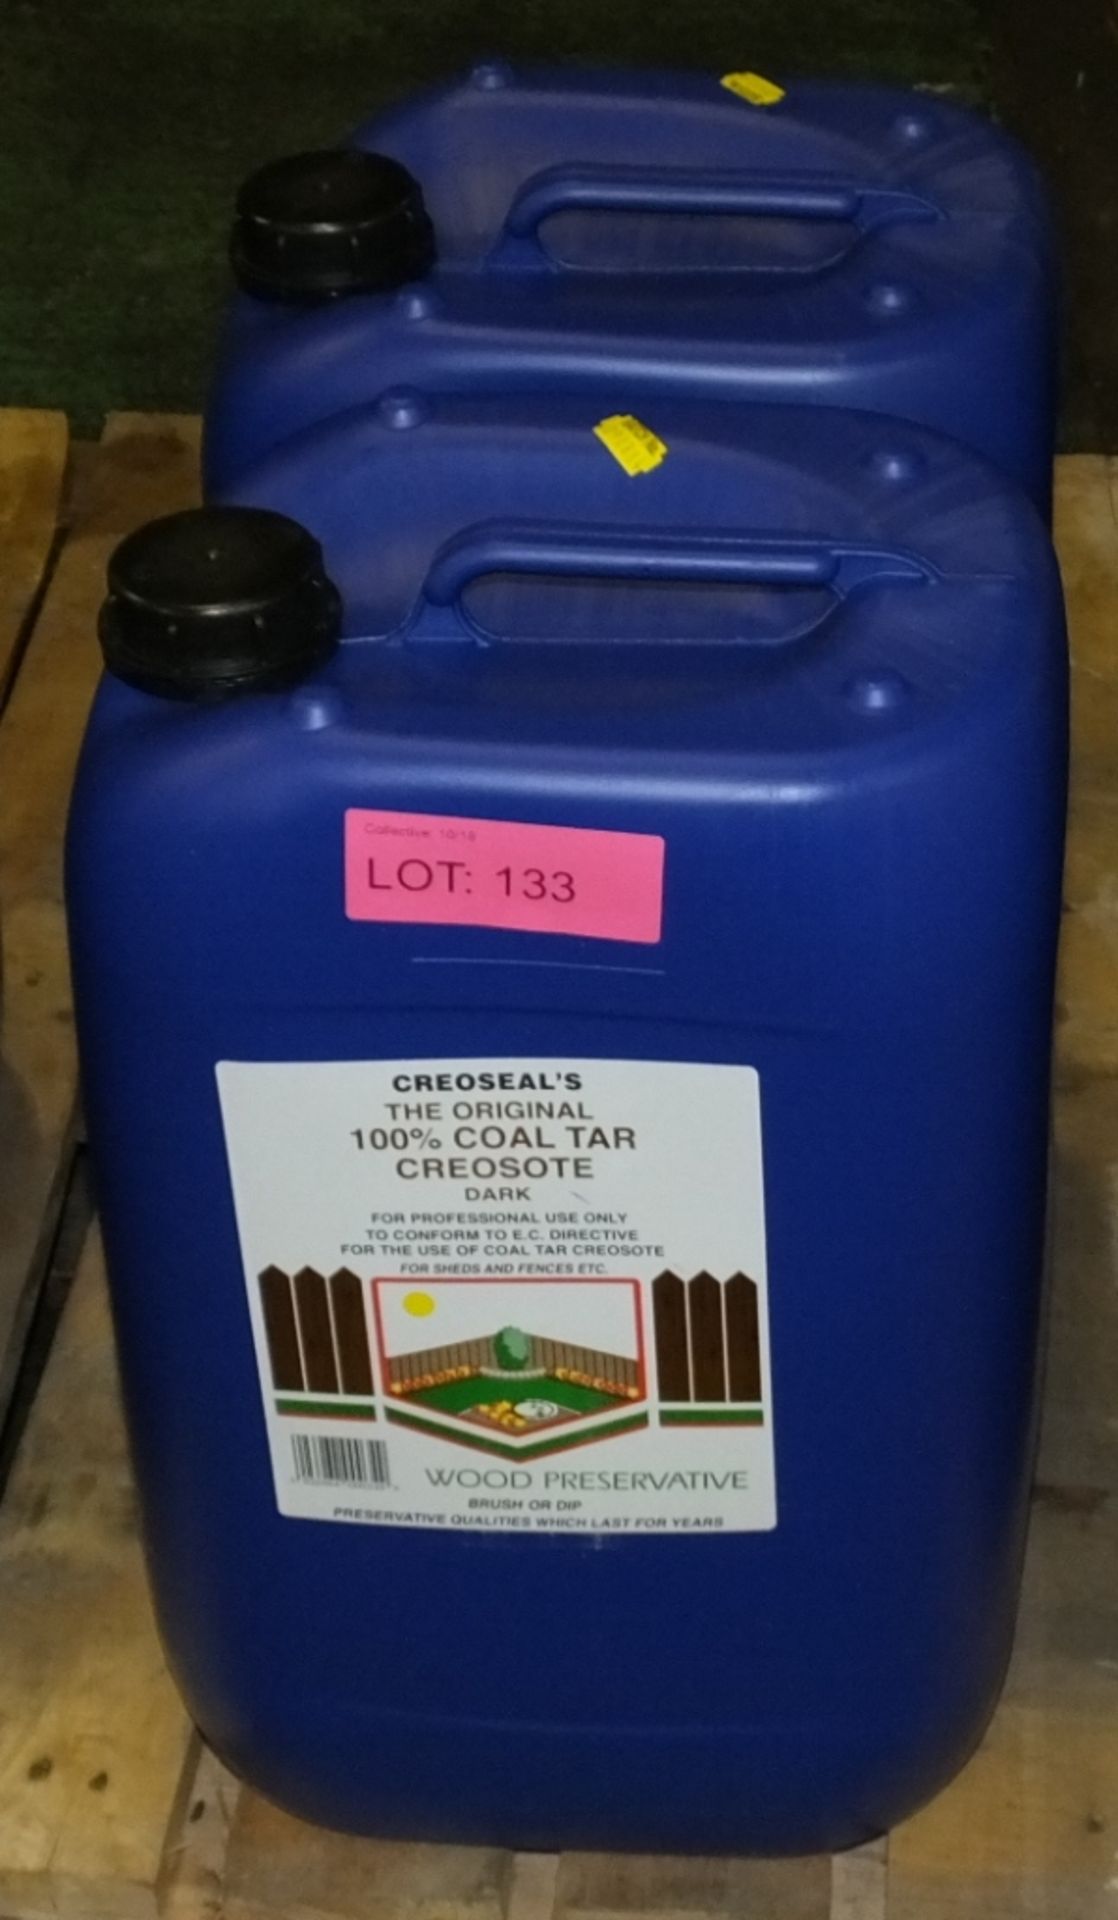 Creoseals The Original 100% Coal Tar Creosote - 20ltr - 2 tubs